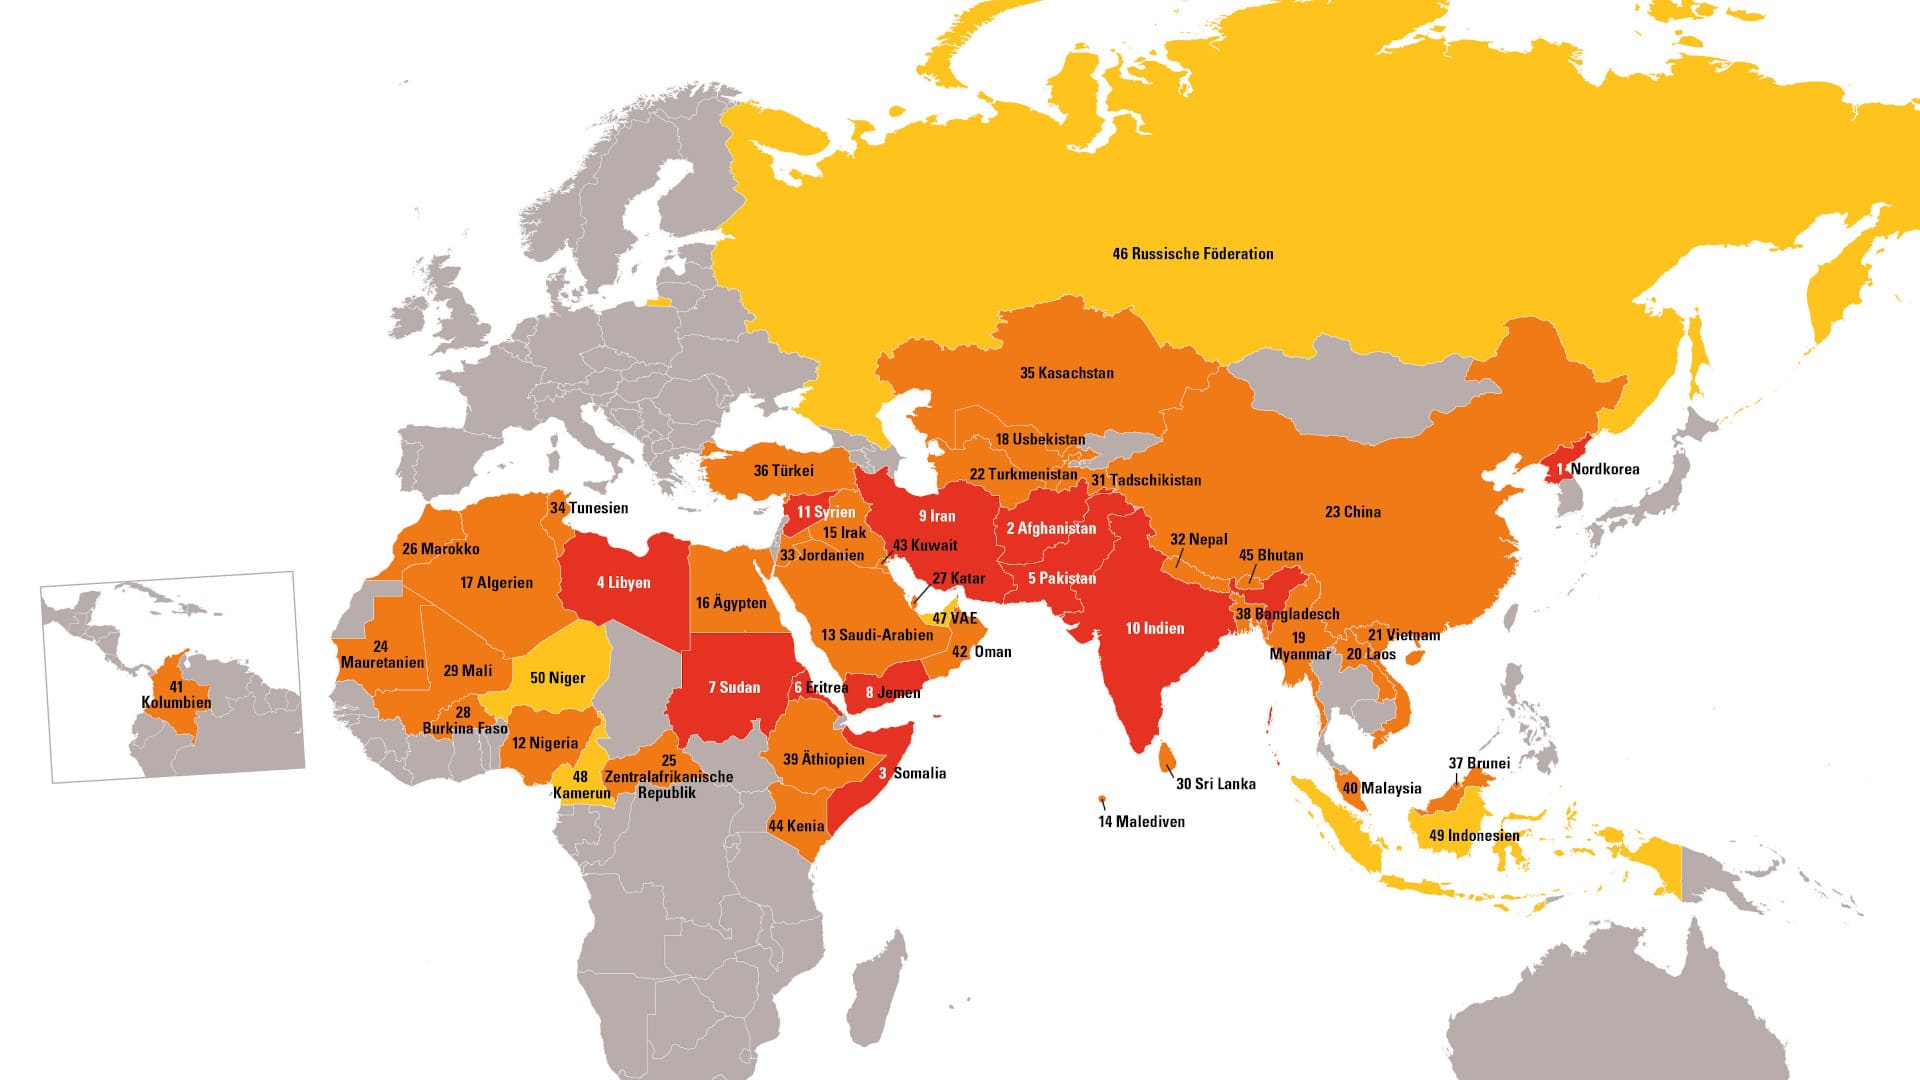 Das Hilfswerk veröffentlicht jedes Jahr den Weltverfolgungsindex, der einen Überblick über die Lage von verfolgten Christen weltweit liefert